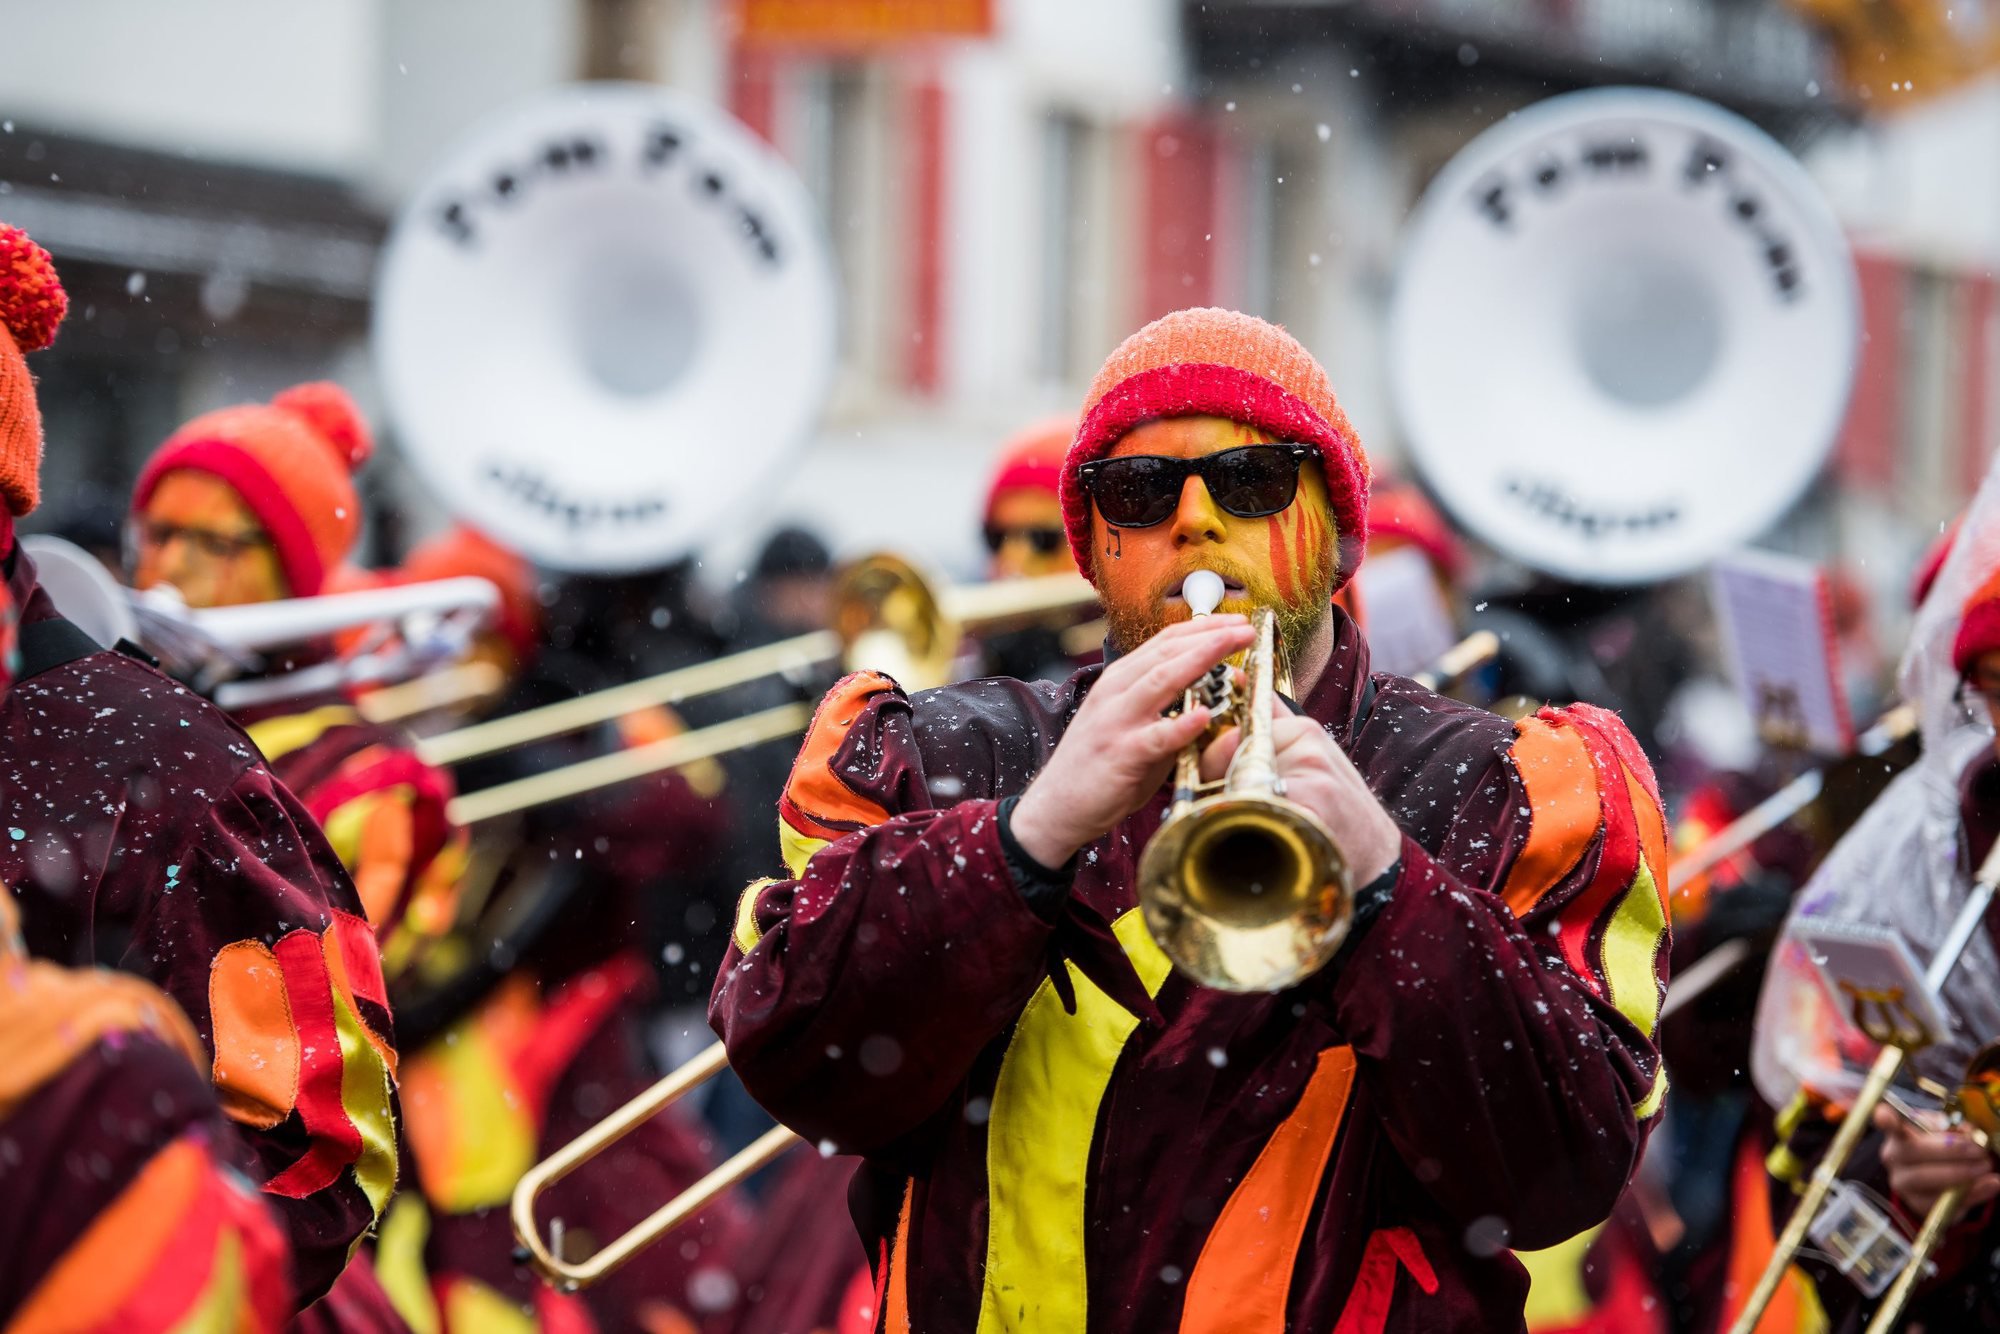 Le cortège 2018 du carnaval du Noirmont. Photo: Lucas Vuitel